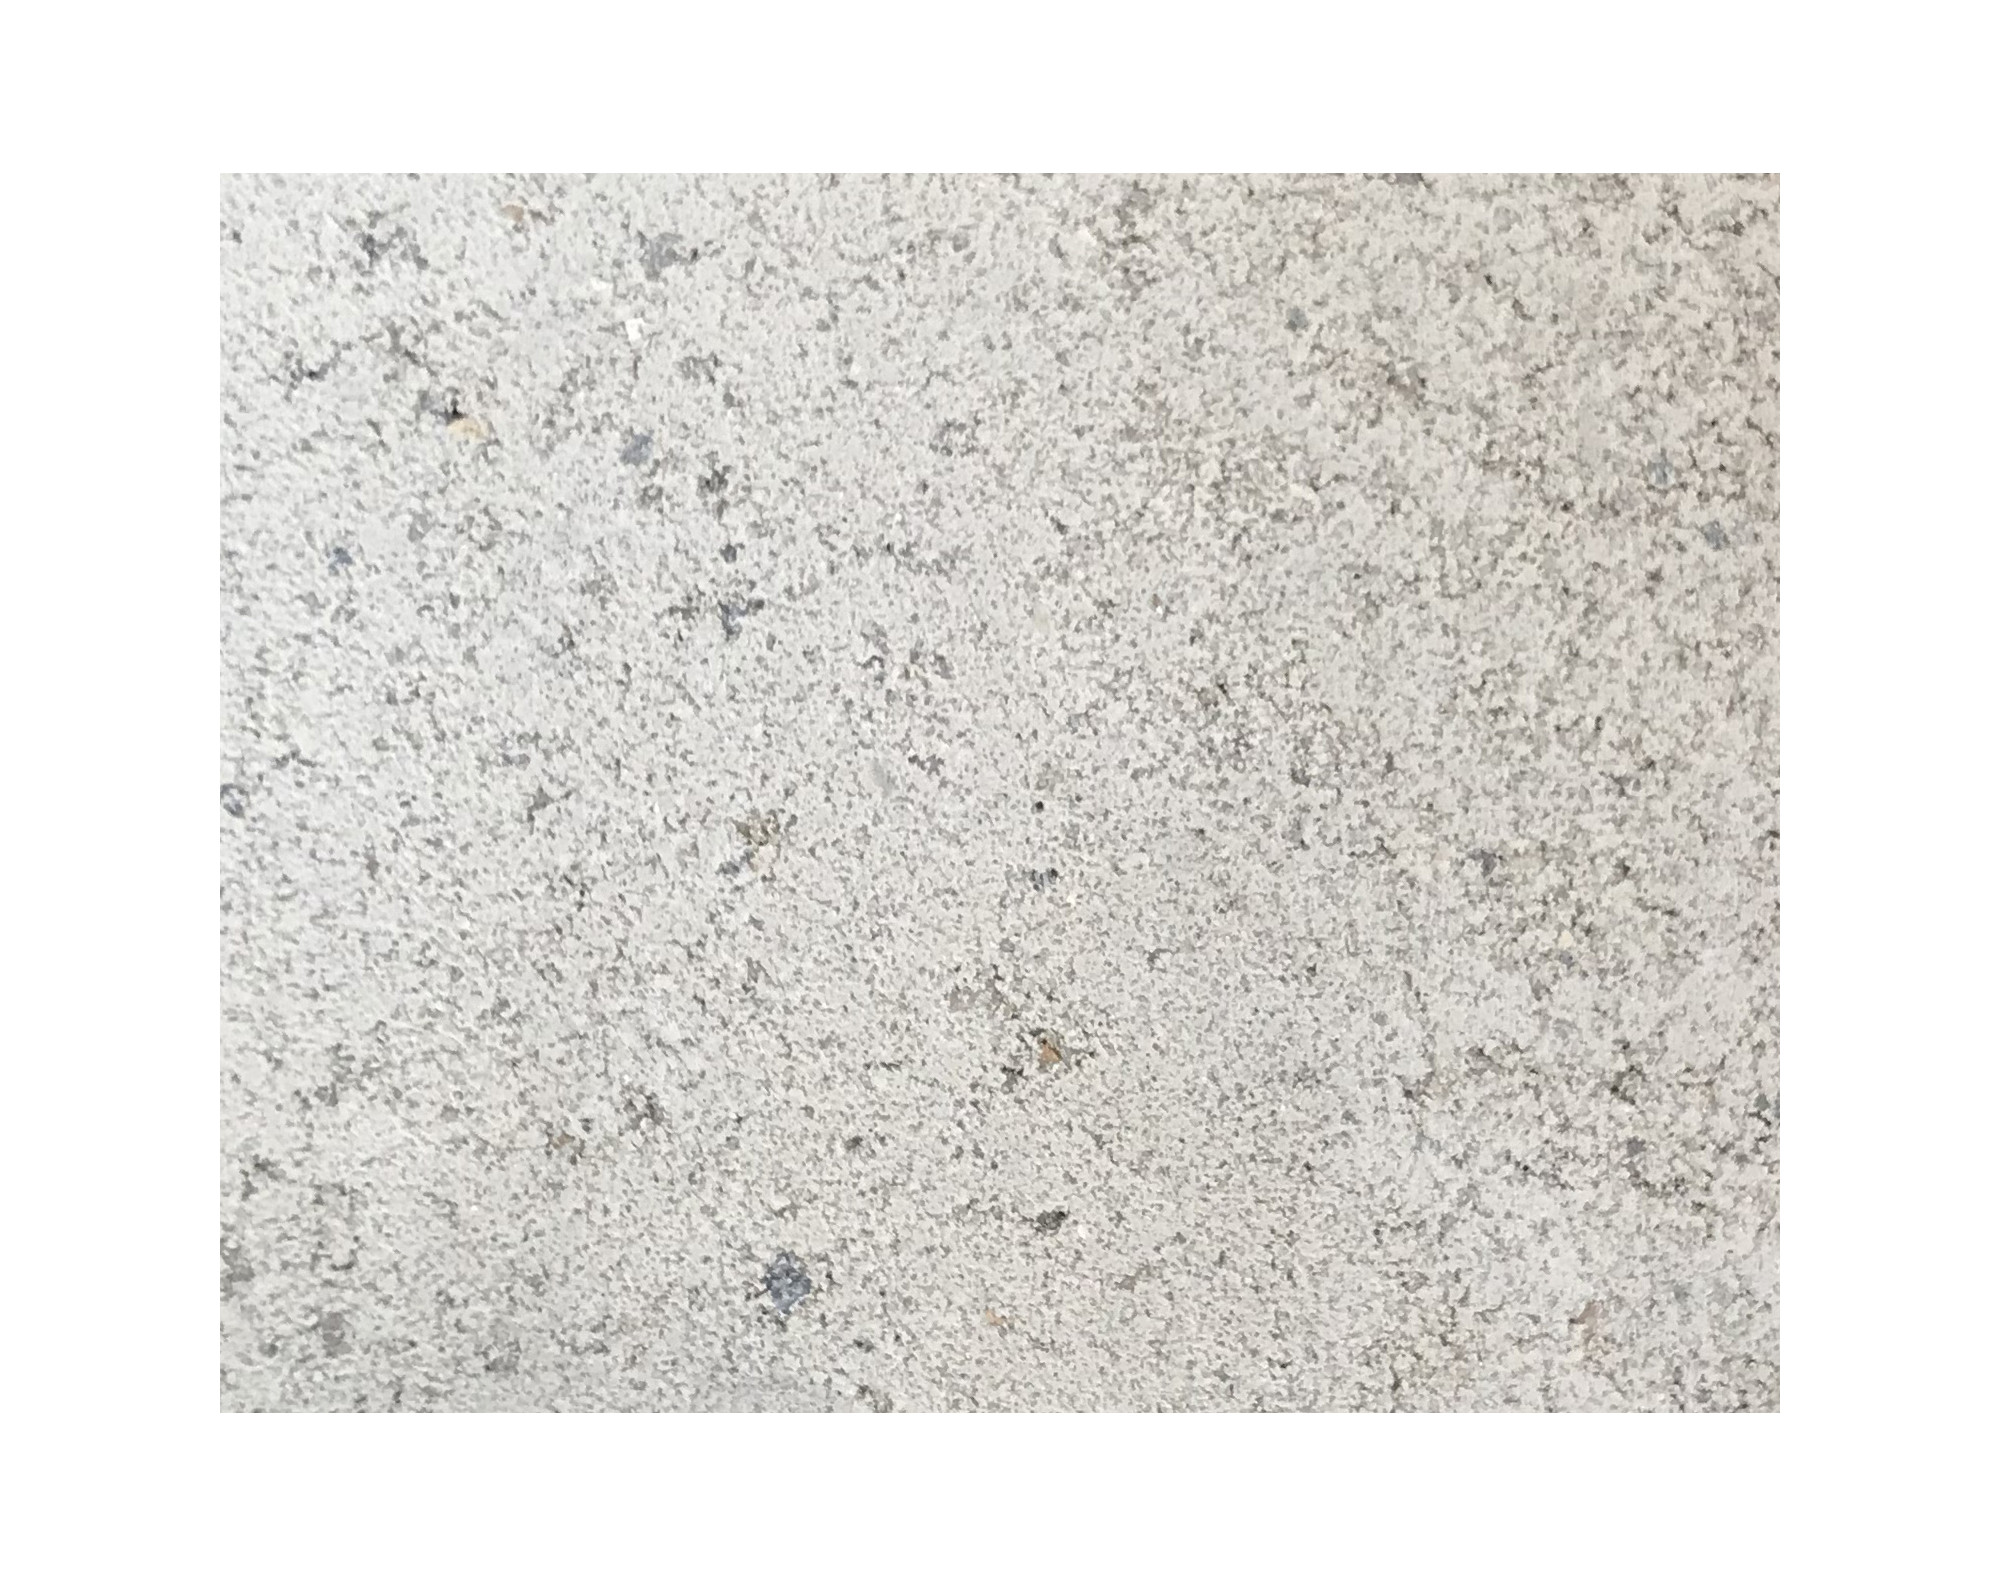 Harmo roc nevadaset, rustica-serie, 8-vormig d:3,50mx5,50m, gebroken wit, beton